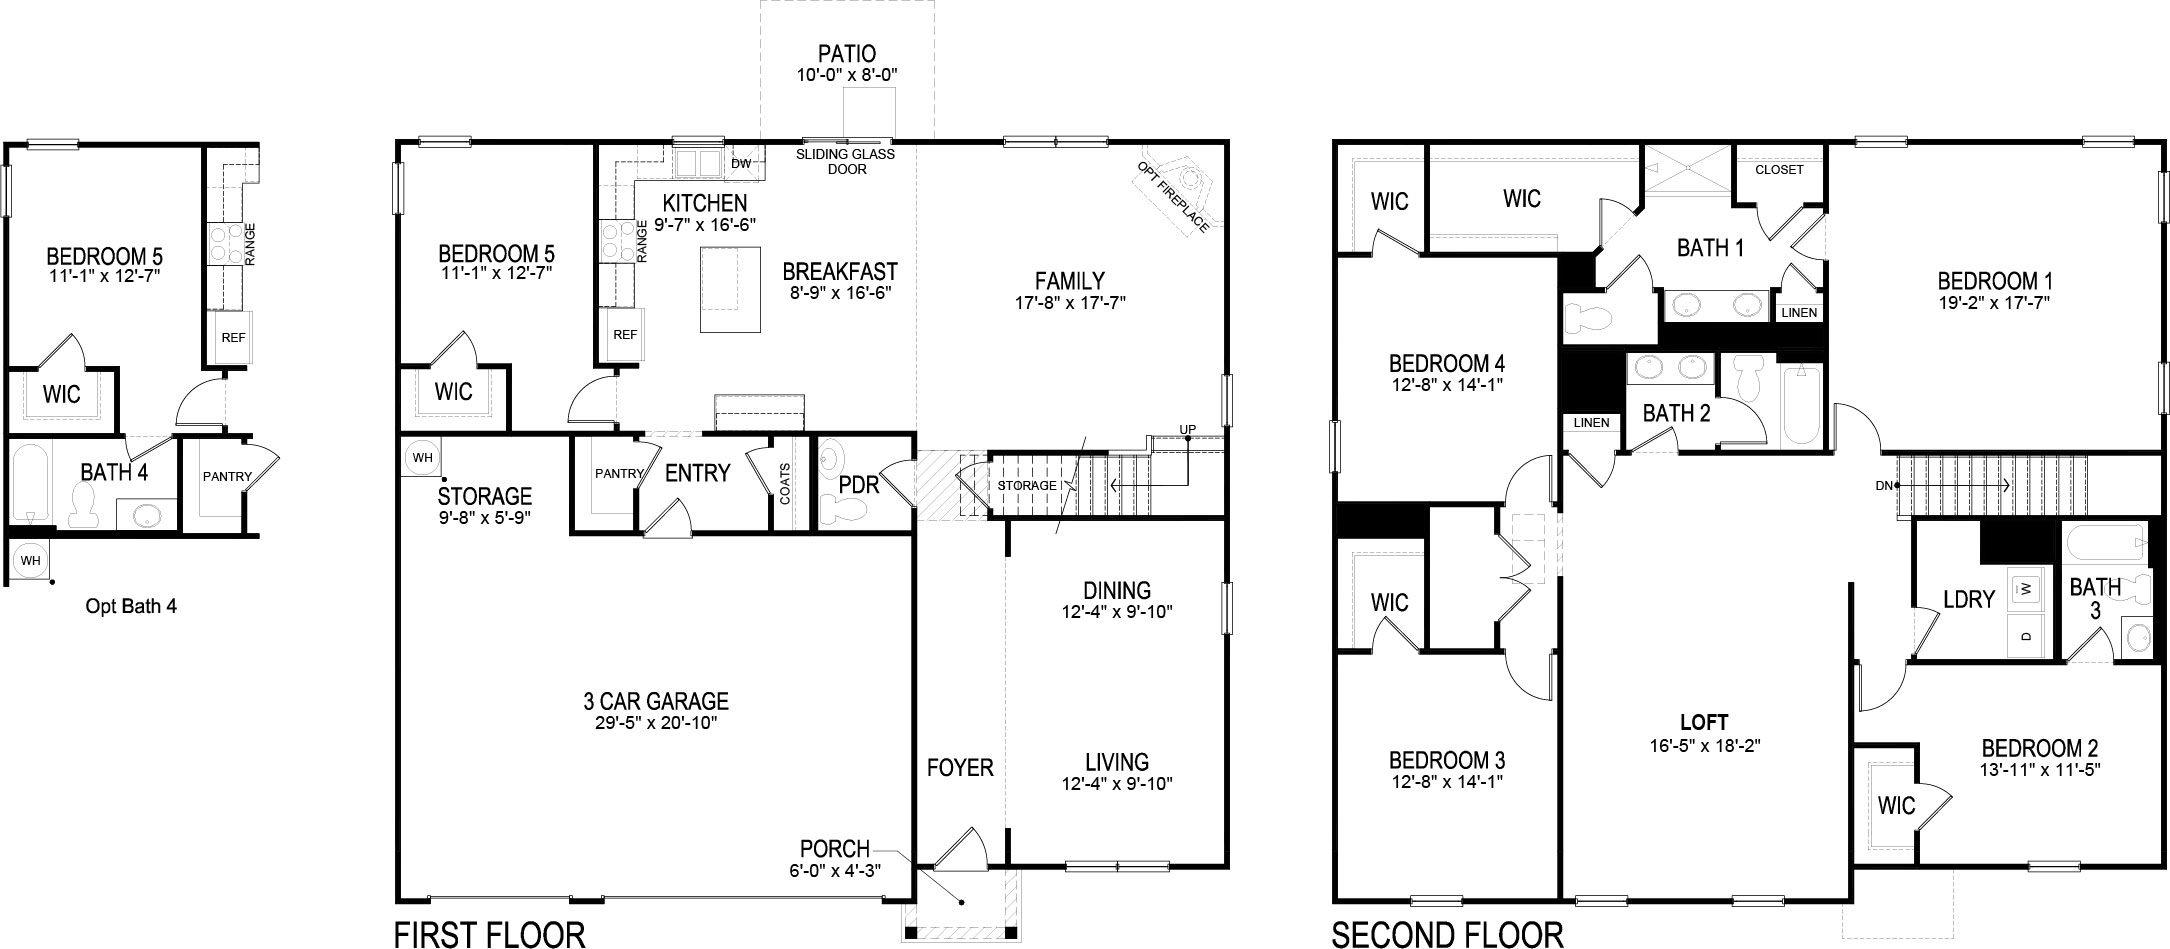 Mansfield floor plan